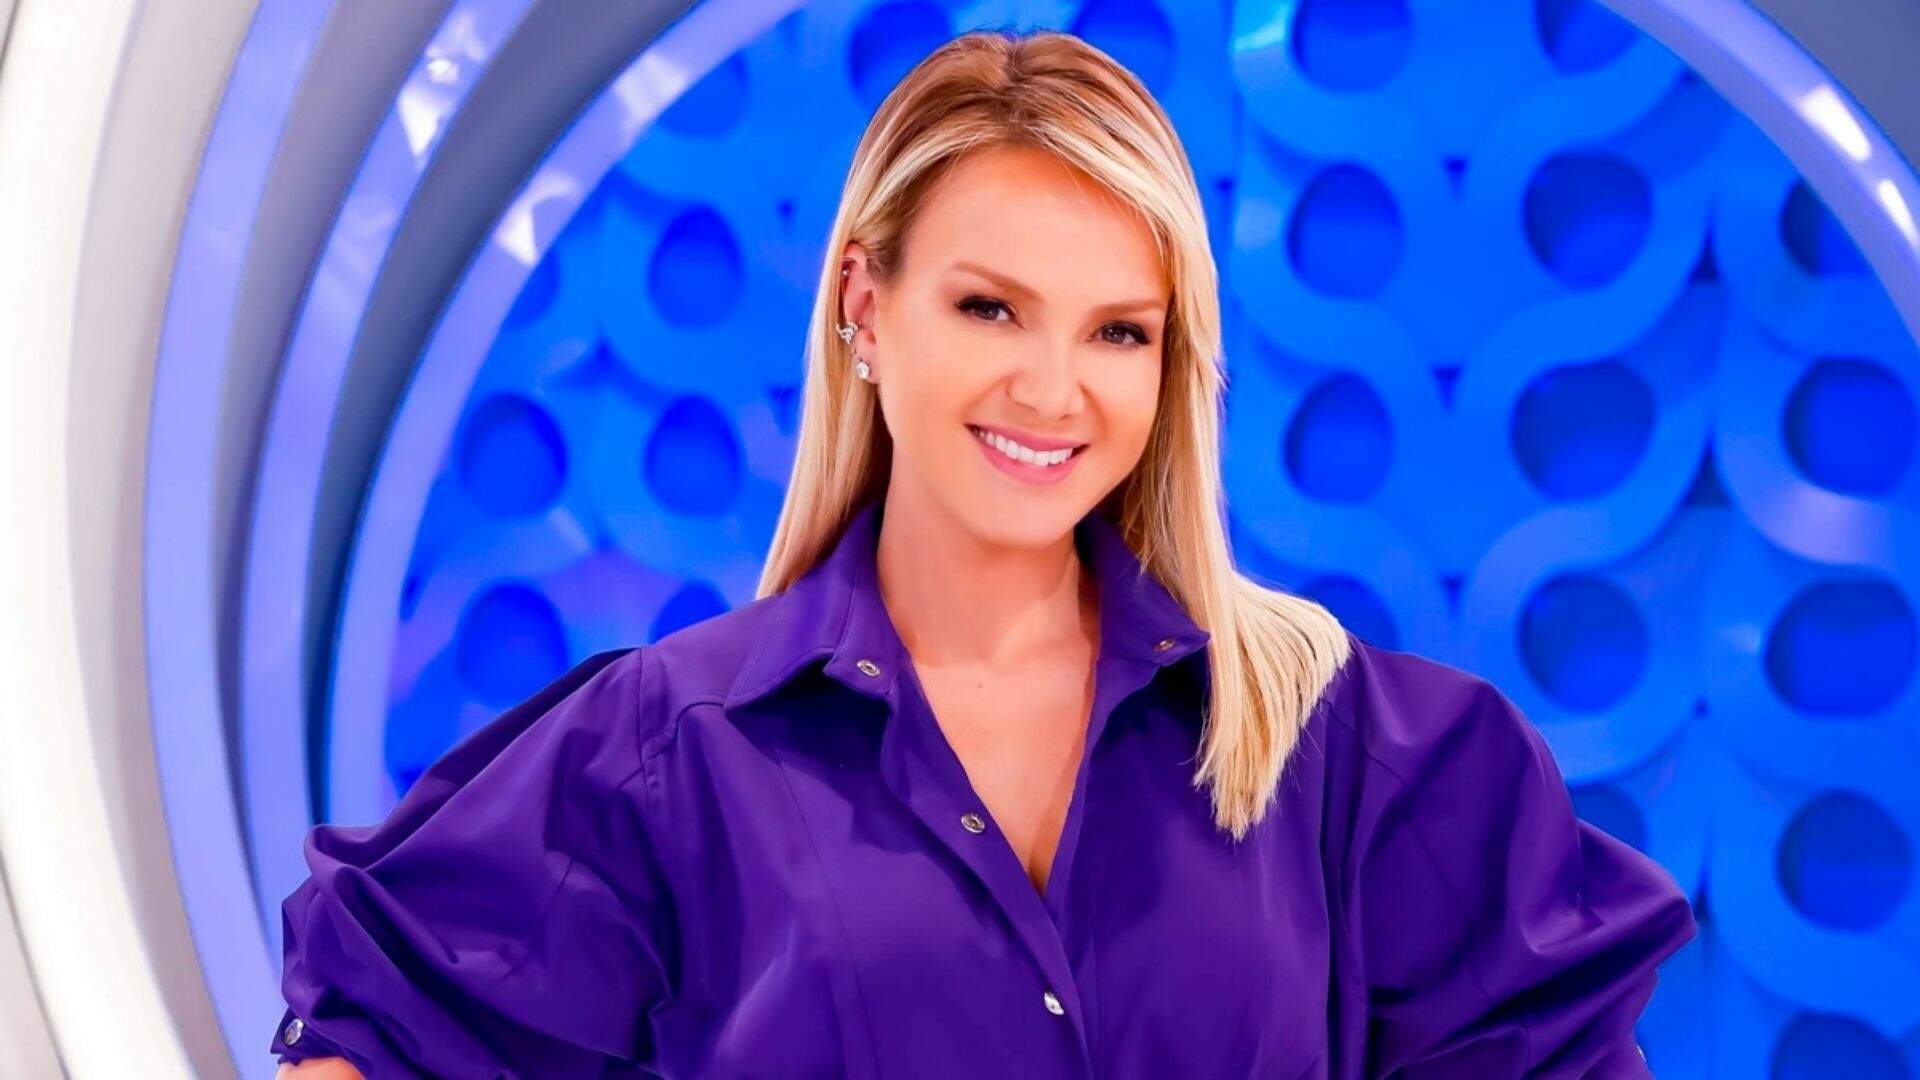 Eliana é uma apresentadora brasileira, fez parte do conjunto Banana Split, foi a primeira apresentadora do Bom Dia & Cia e atualmente apresenta Eliana nas tardes de domingo no SBT.